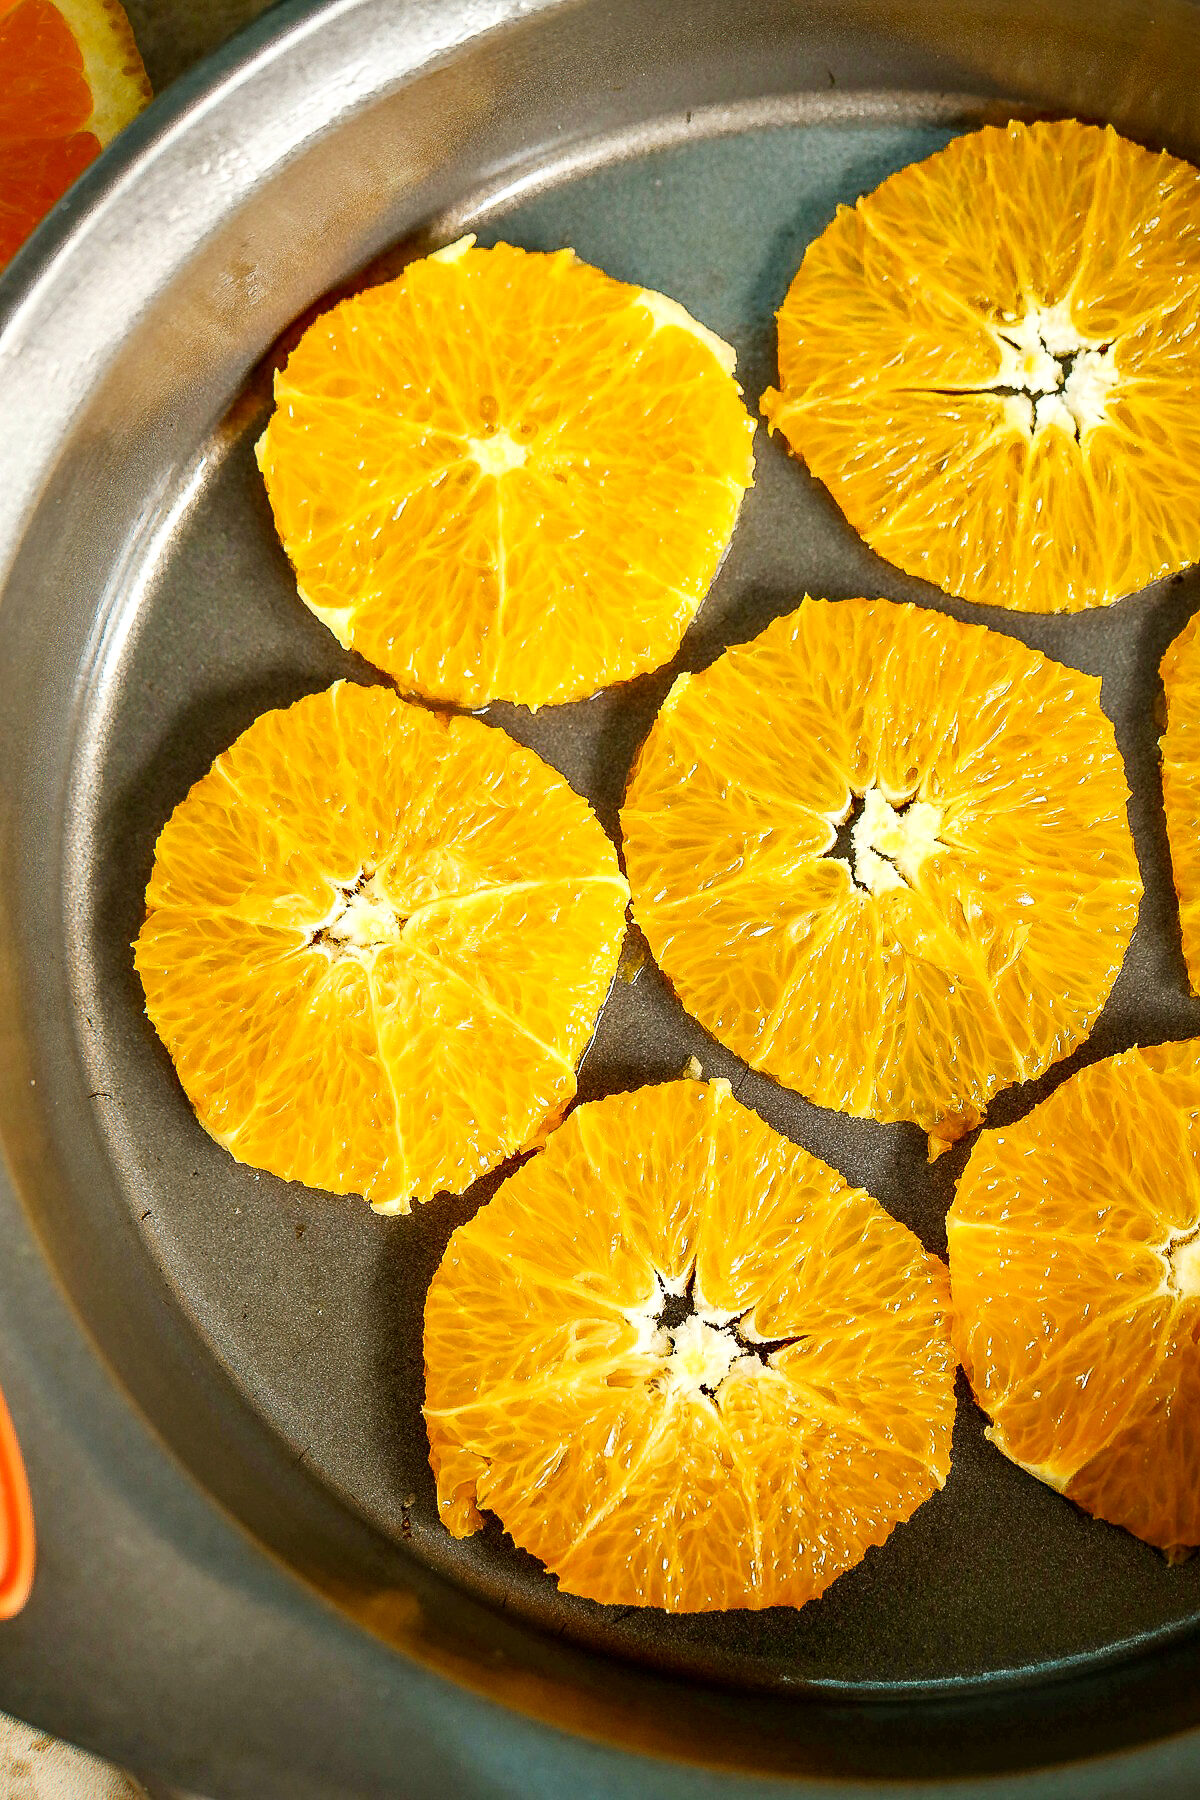 Orange slices at bottom of cake pan.